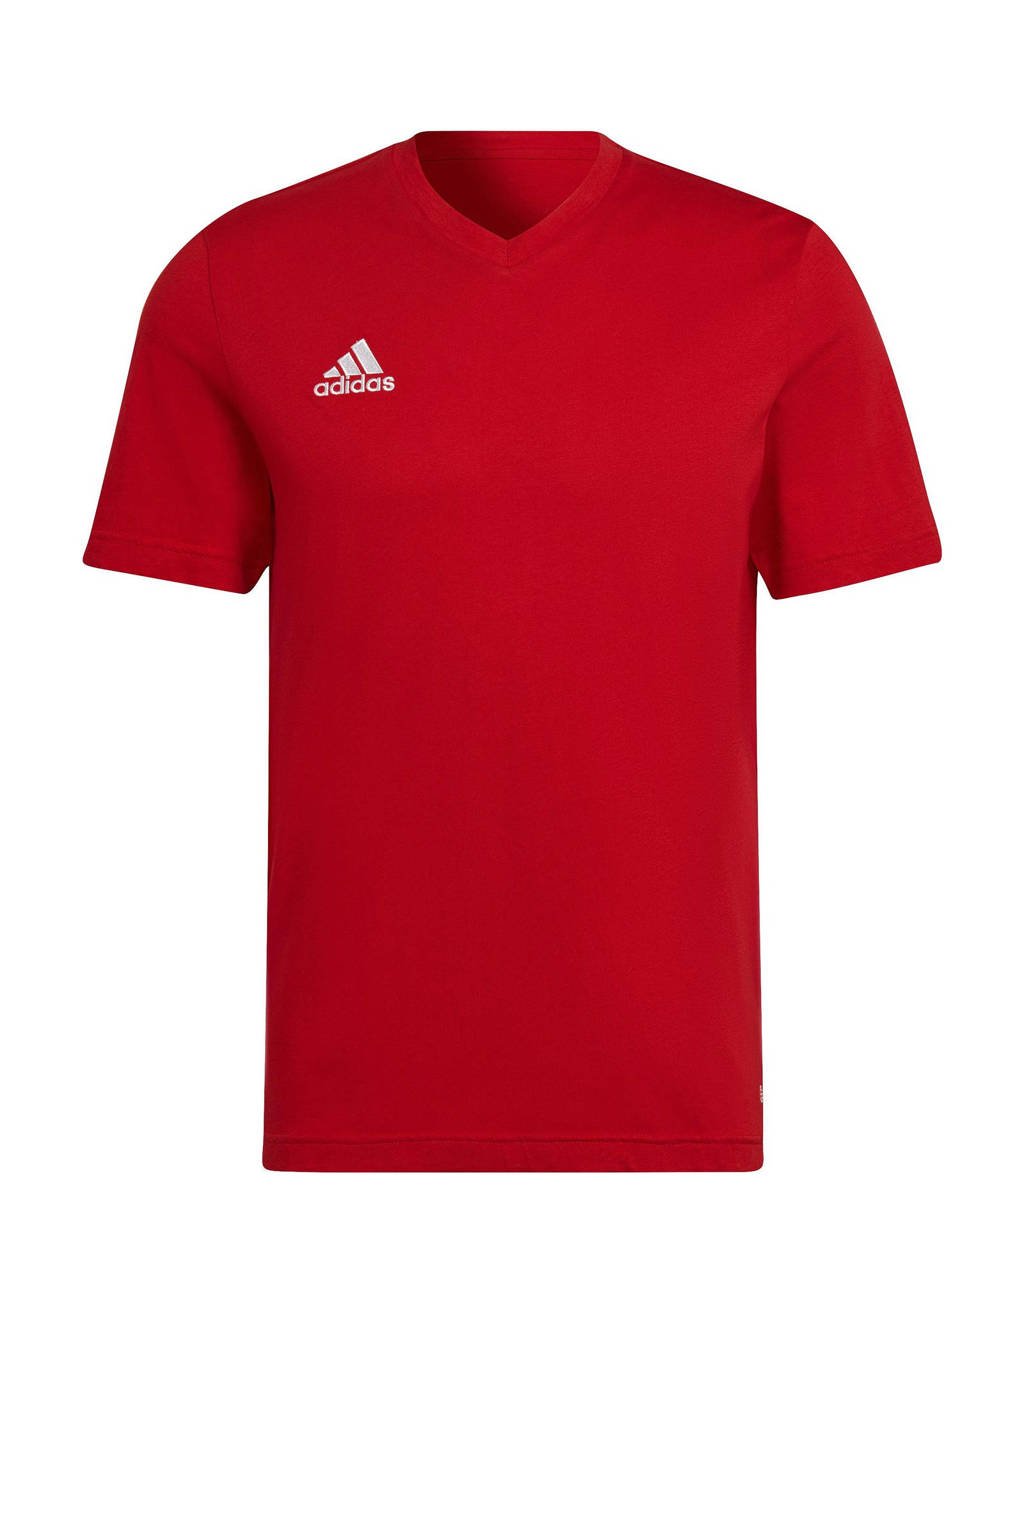 Rode heren adidas Performance Senior sport T-shirt van katoen met logo dessin, korte mouwen en V-hals